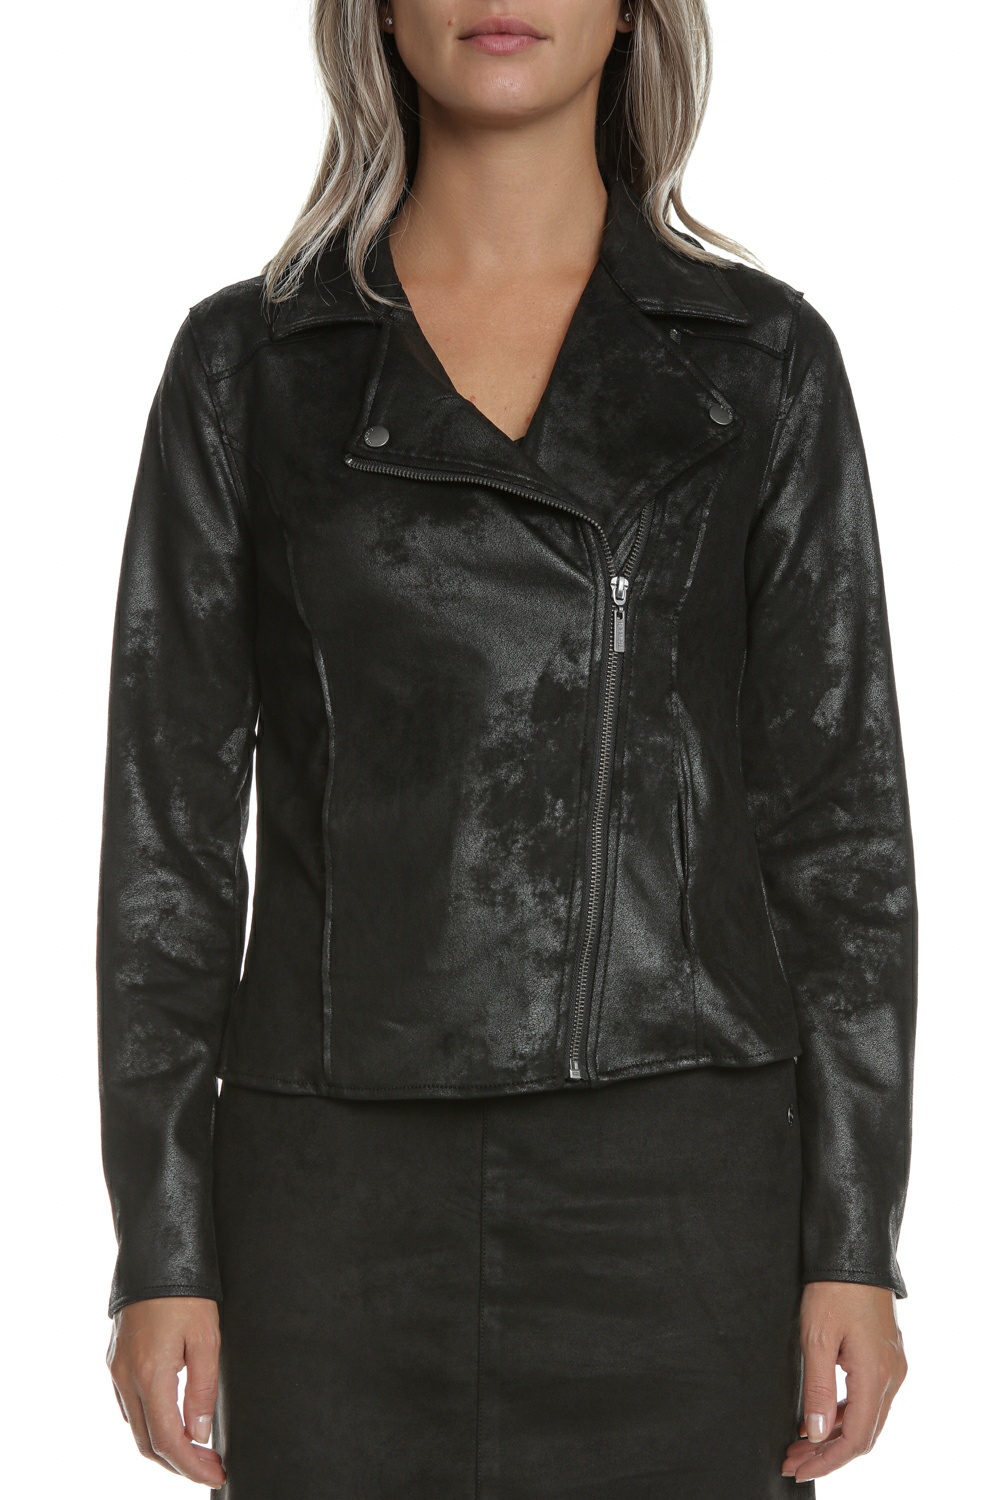 GARCIA JEANS – Γυναικείο jacket GARCIA JEANS μαύρο 1794964.0-7171